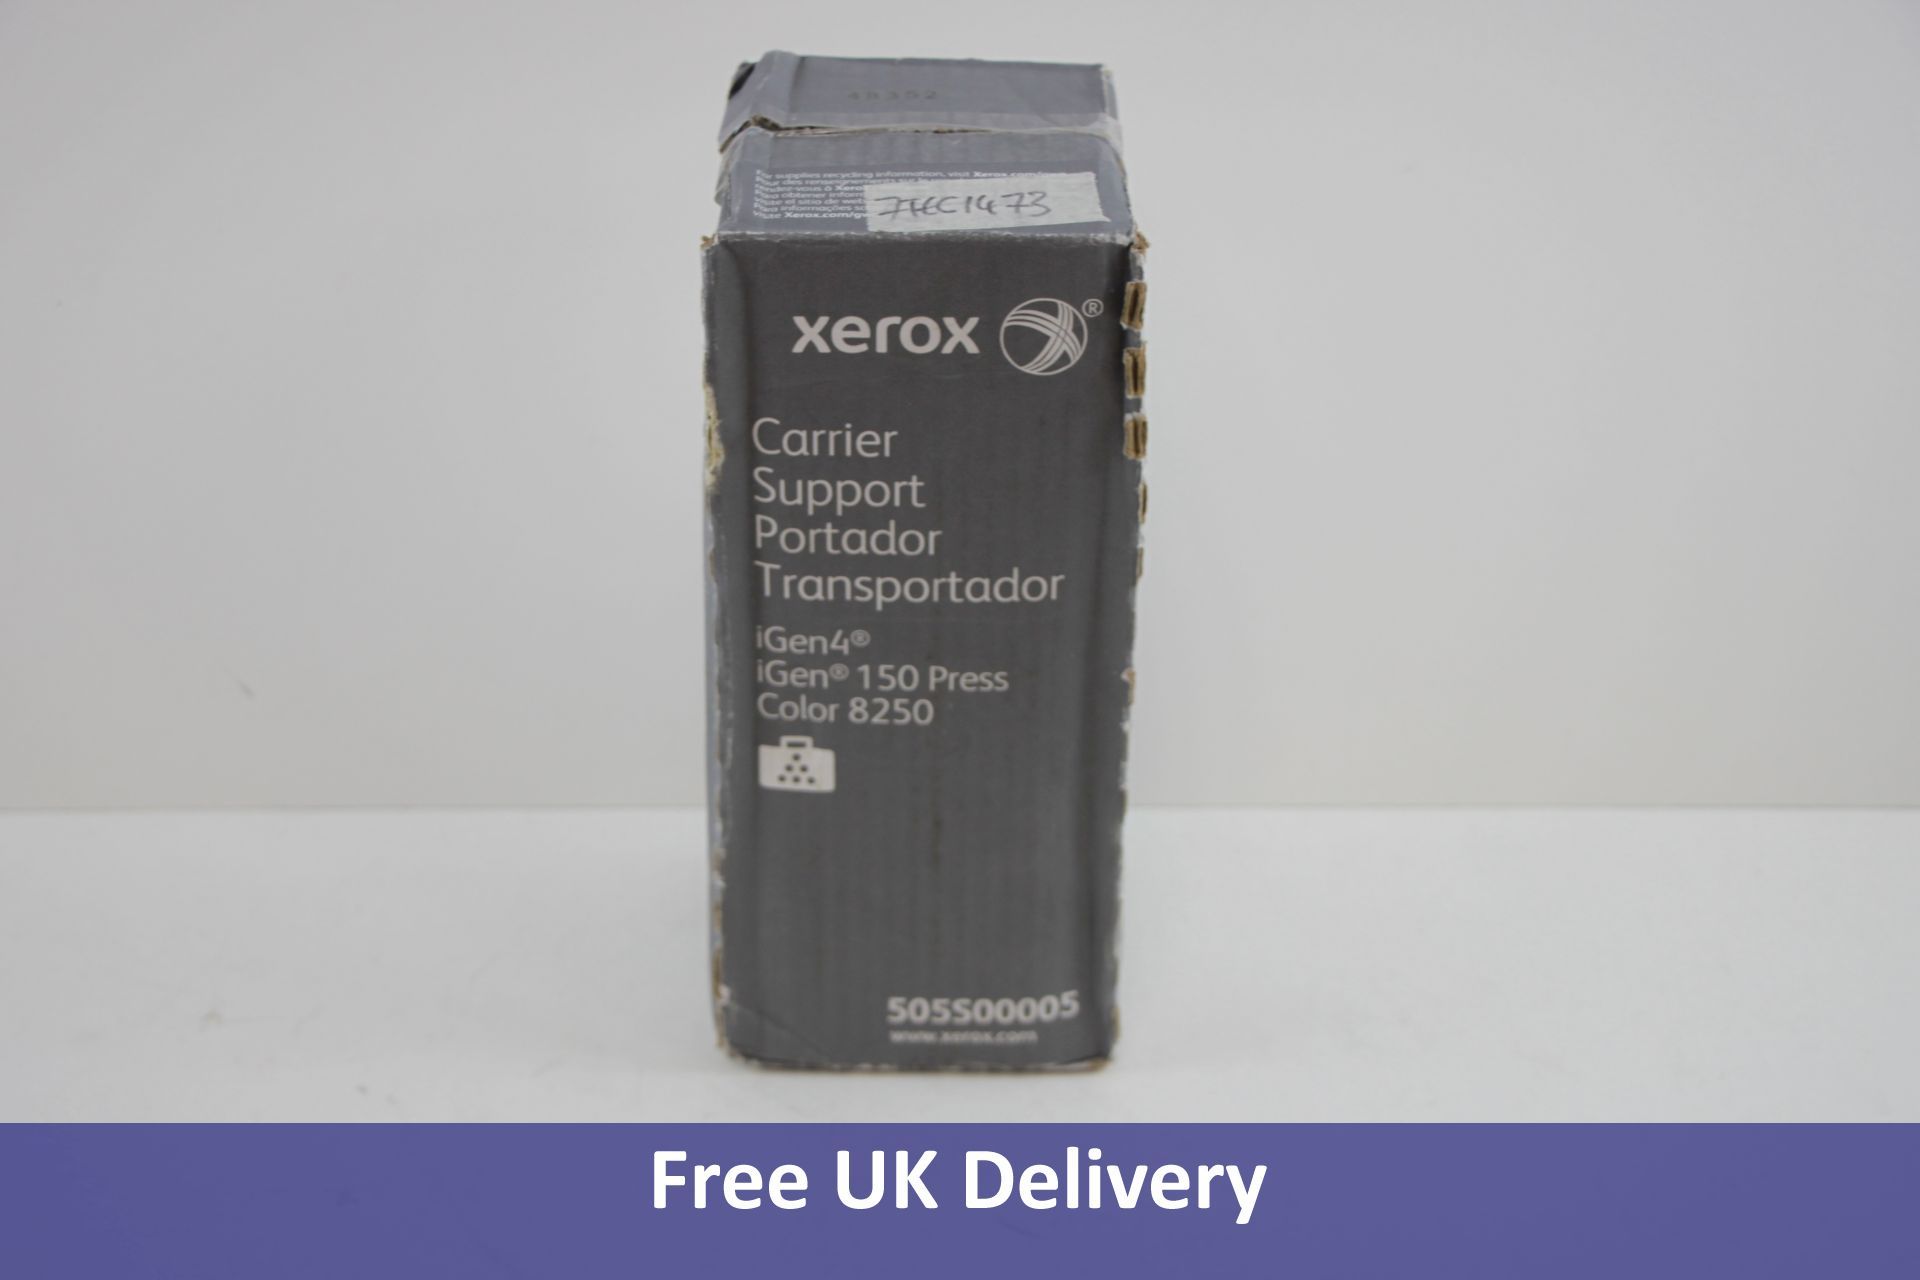 Xerox 505S00005, Carrier Support, iGen4, iGen 150- Original